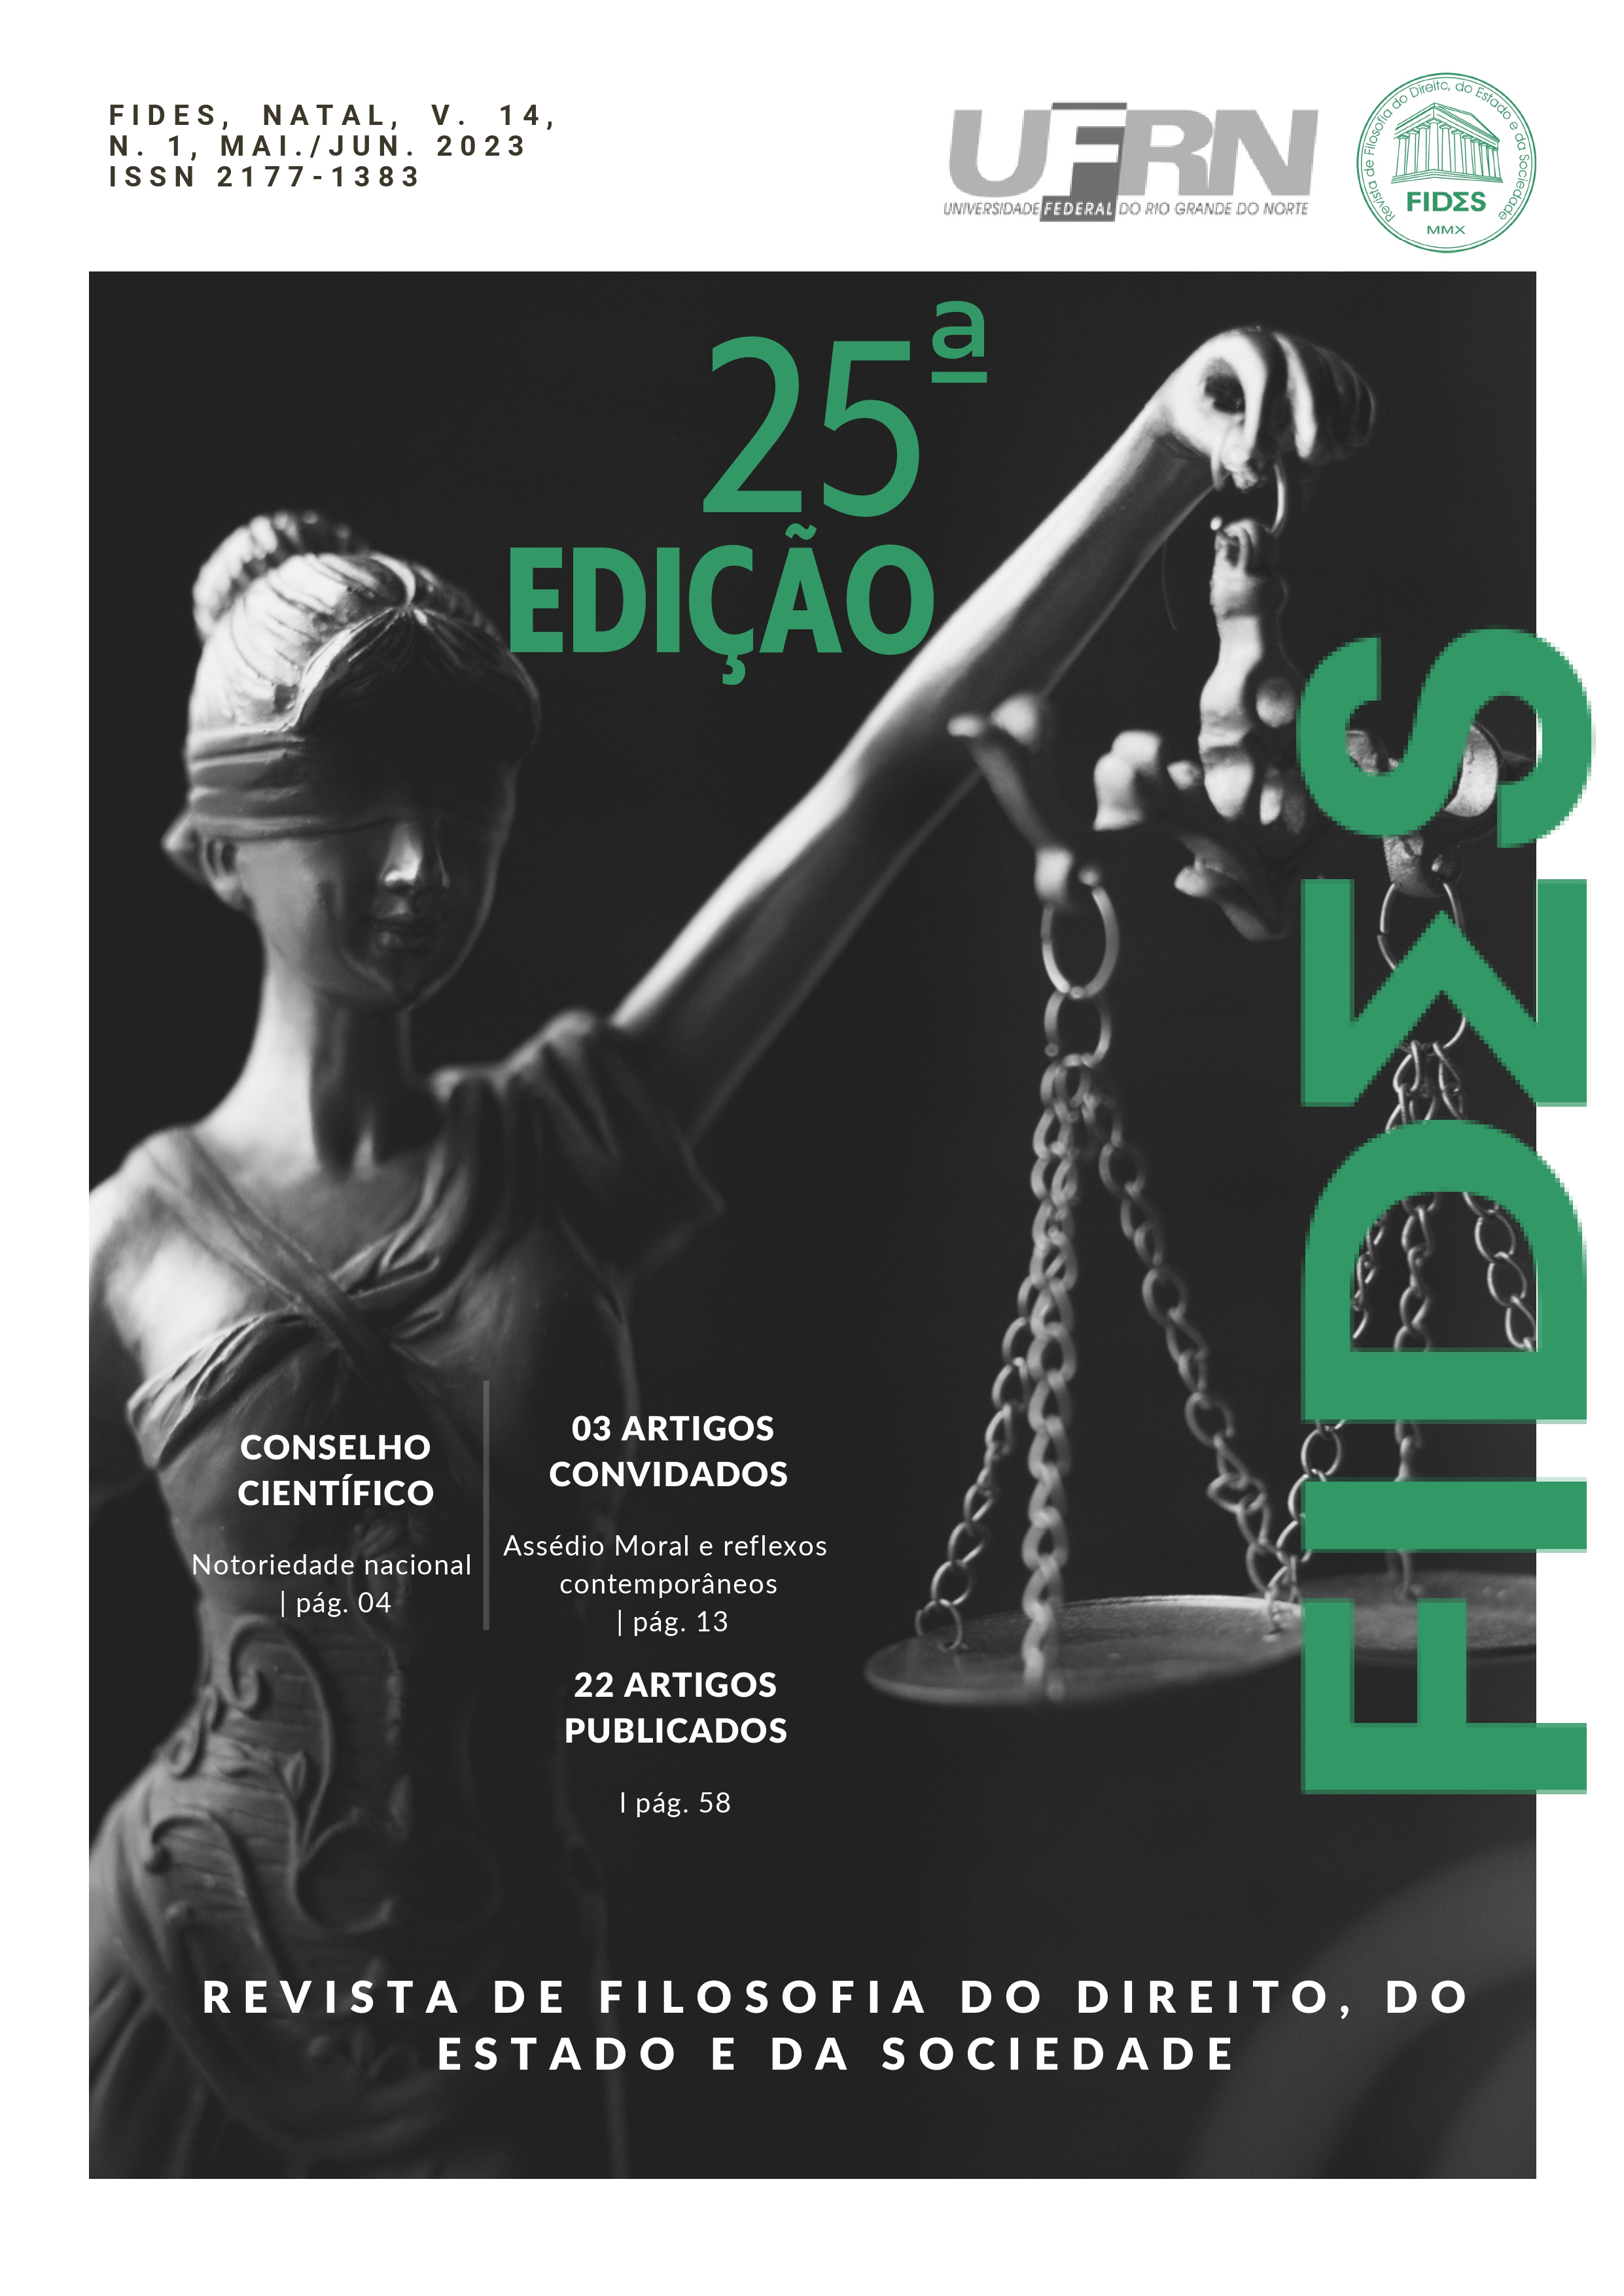 Revista Libertas - Edição de Lançamento by giriadesign - Issuu